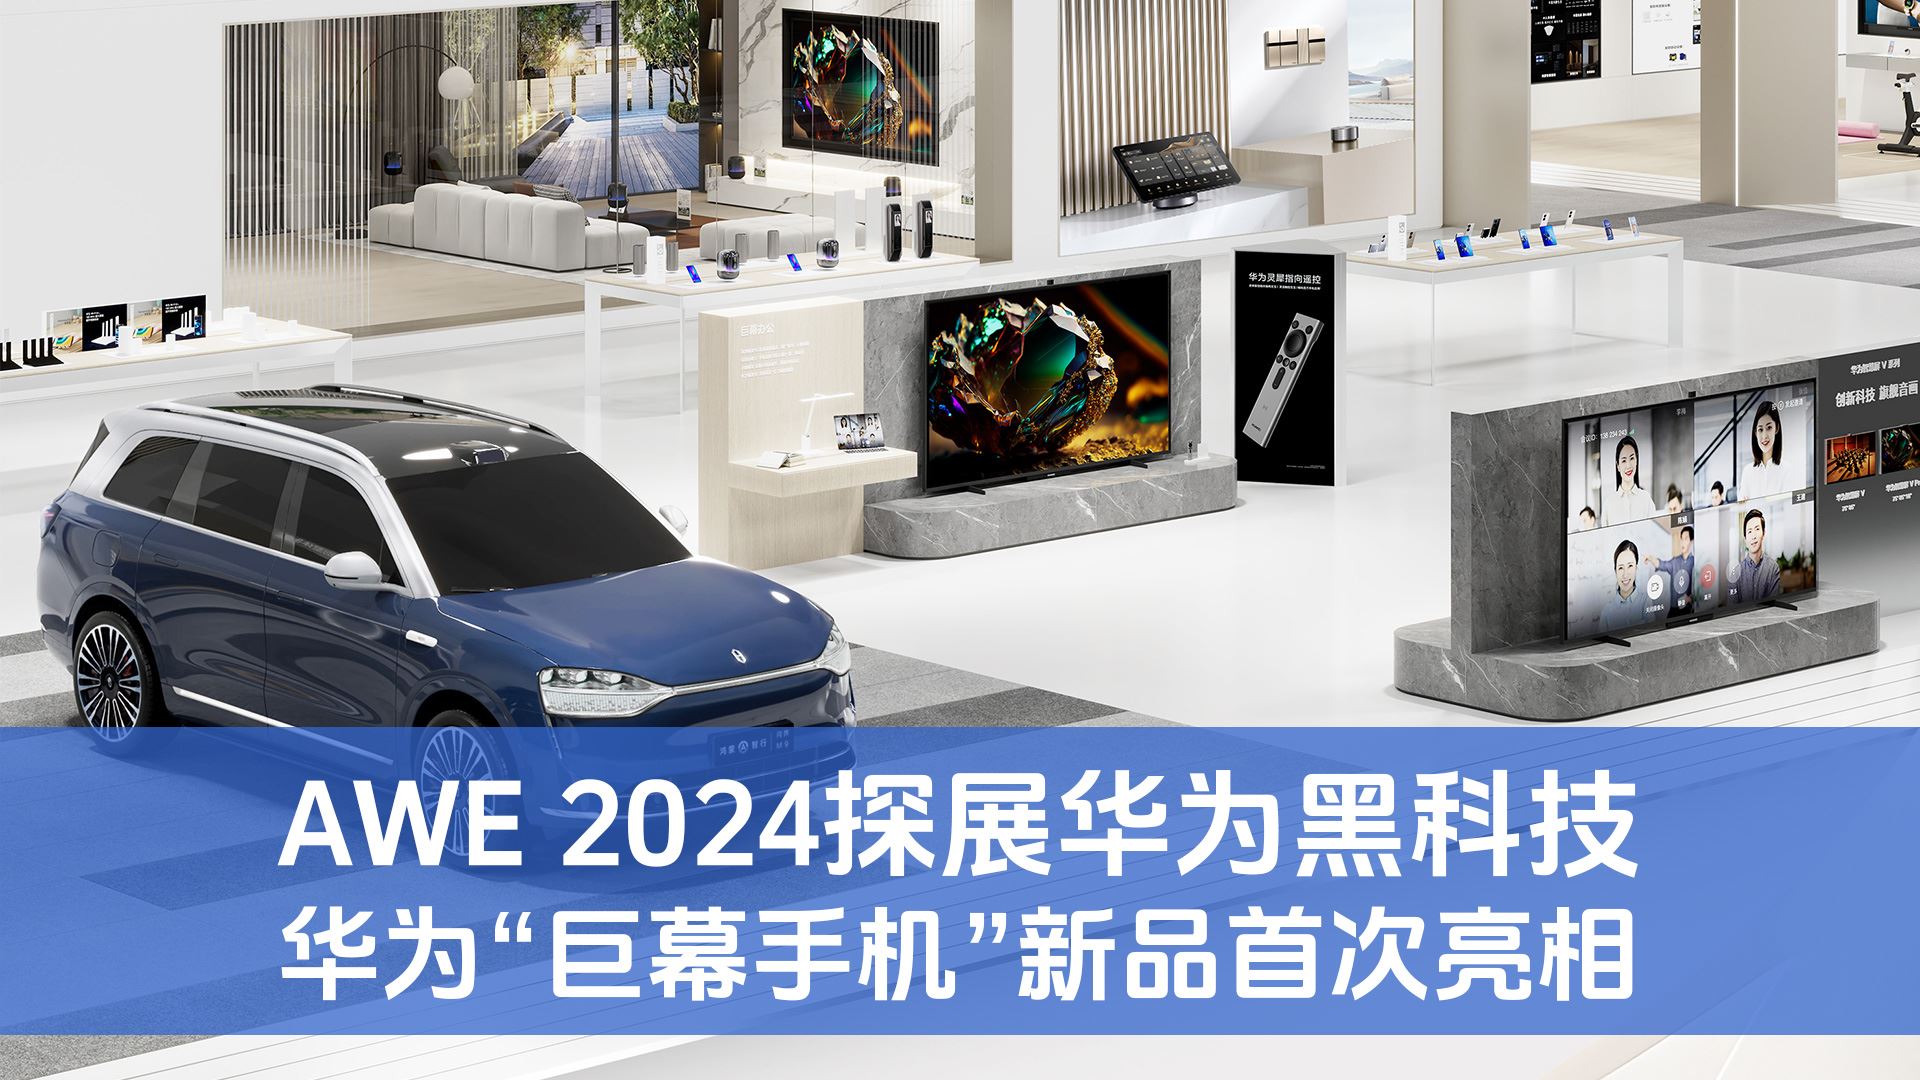 AWE 2024 华为“巨幕手机”新品首次亮相